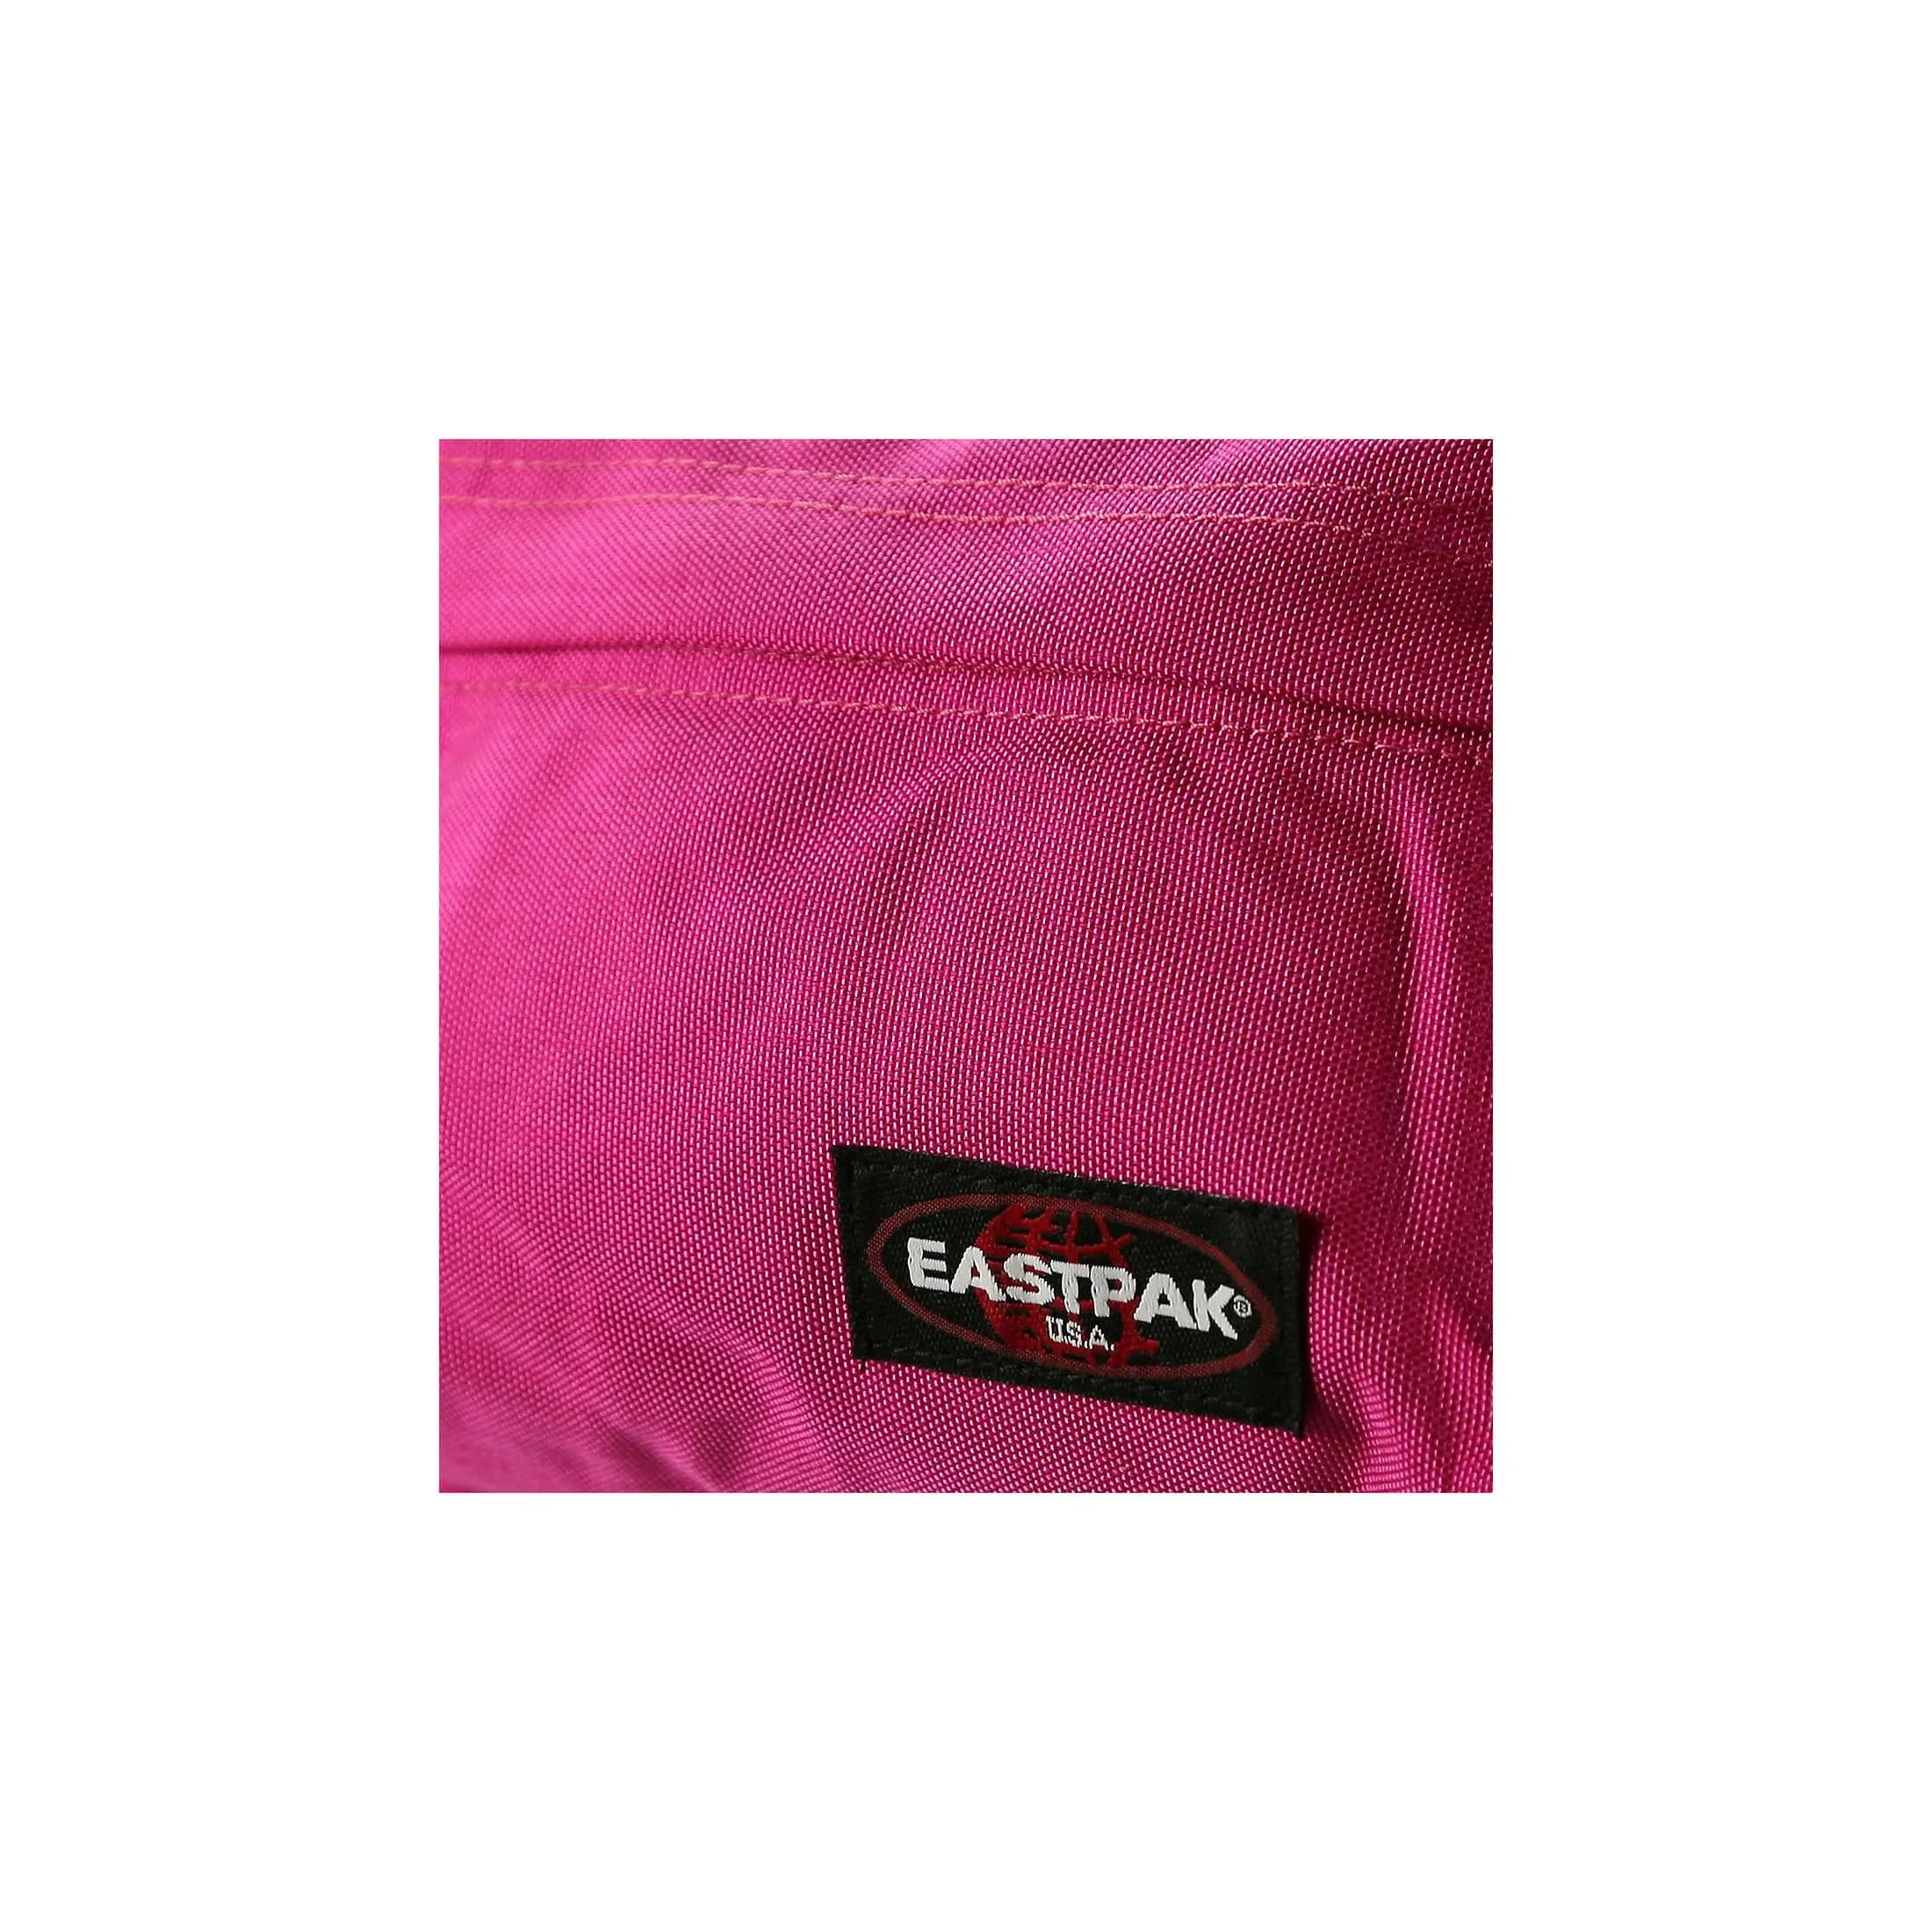 Eastpak Authentic Orbit sac à dos de loisirs 33 cm - Crafty Wine